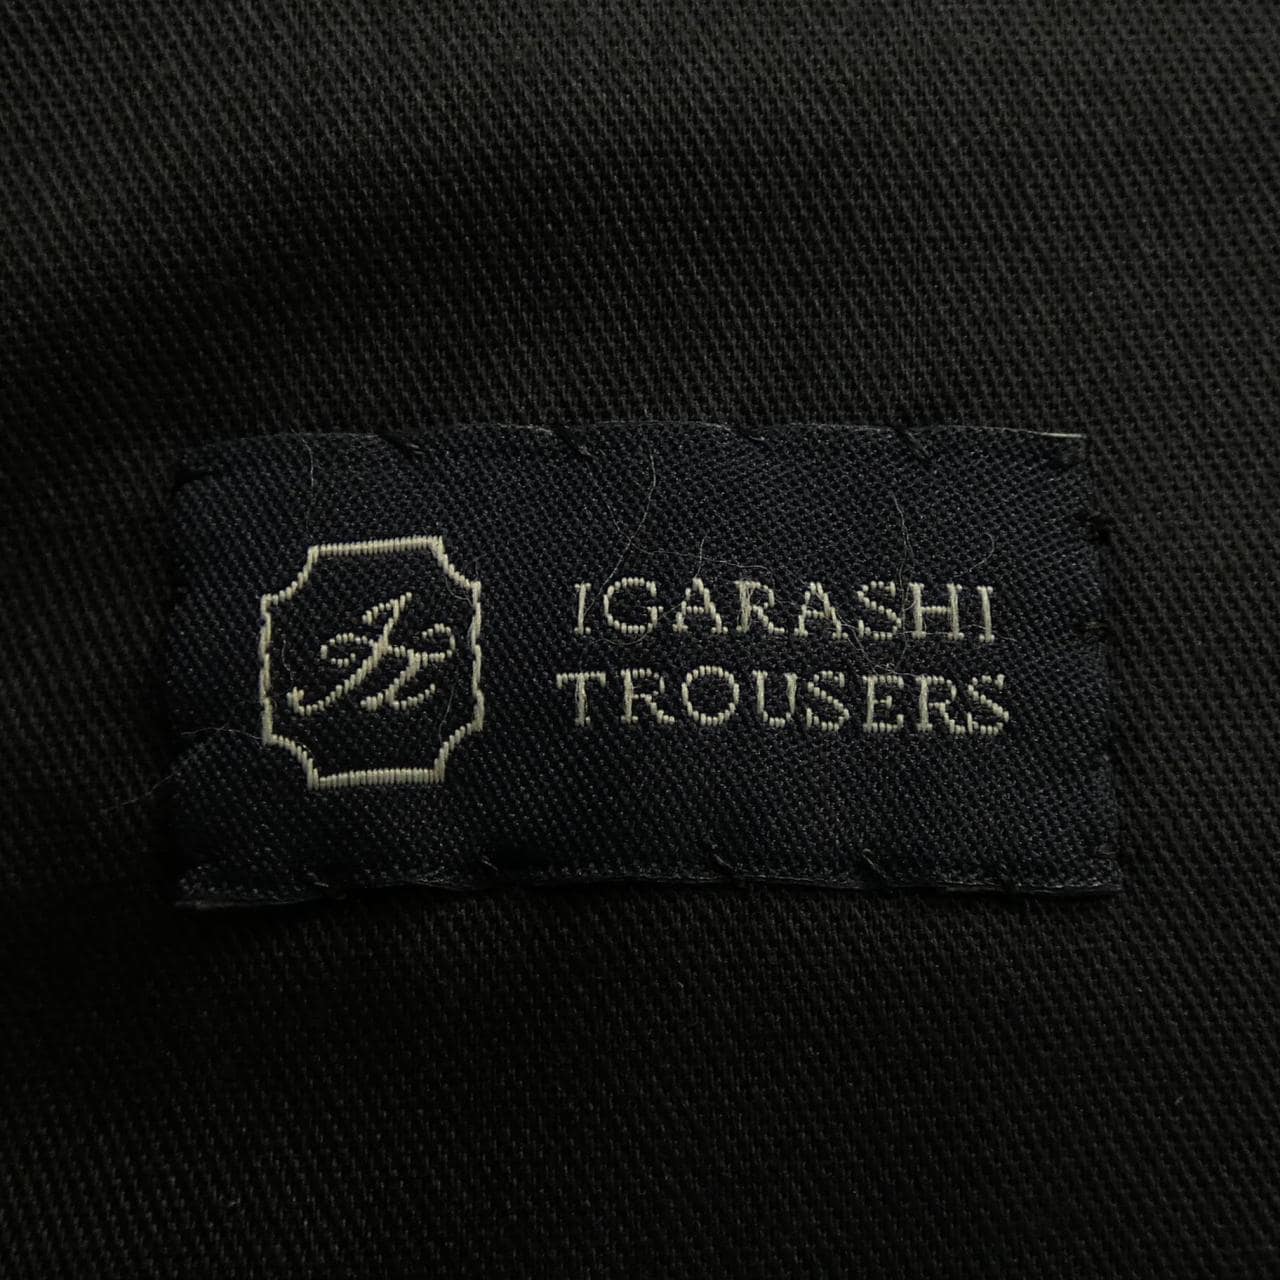 IGARASHI TROUSERS パンツ